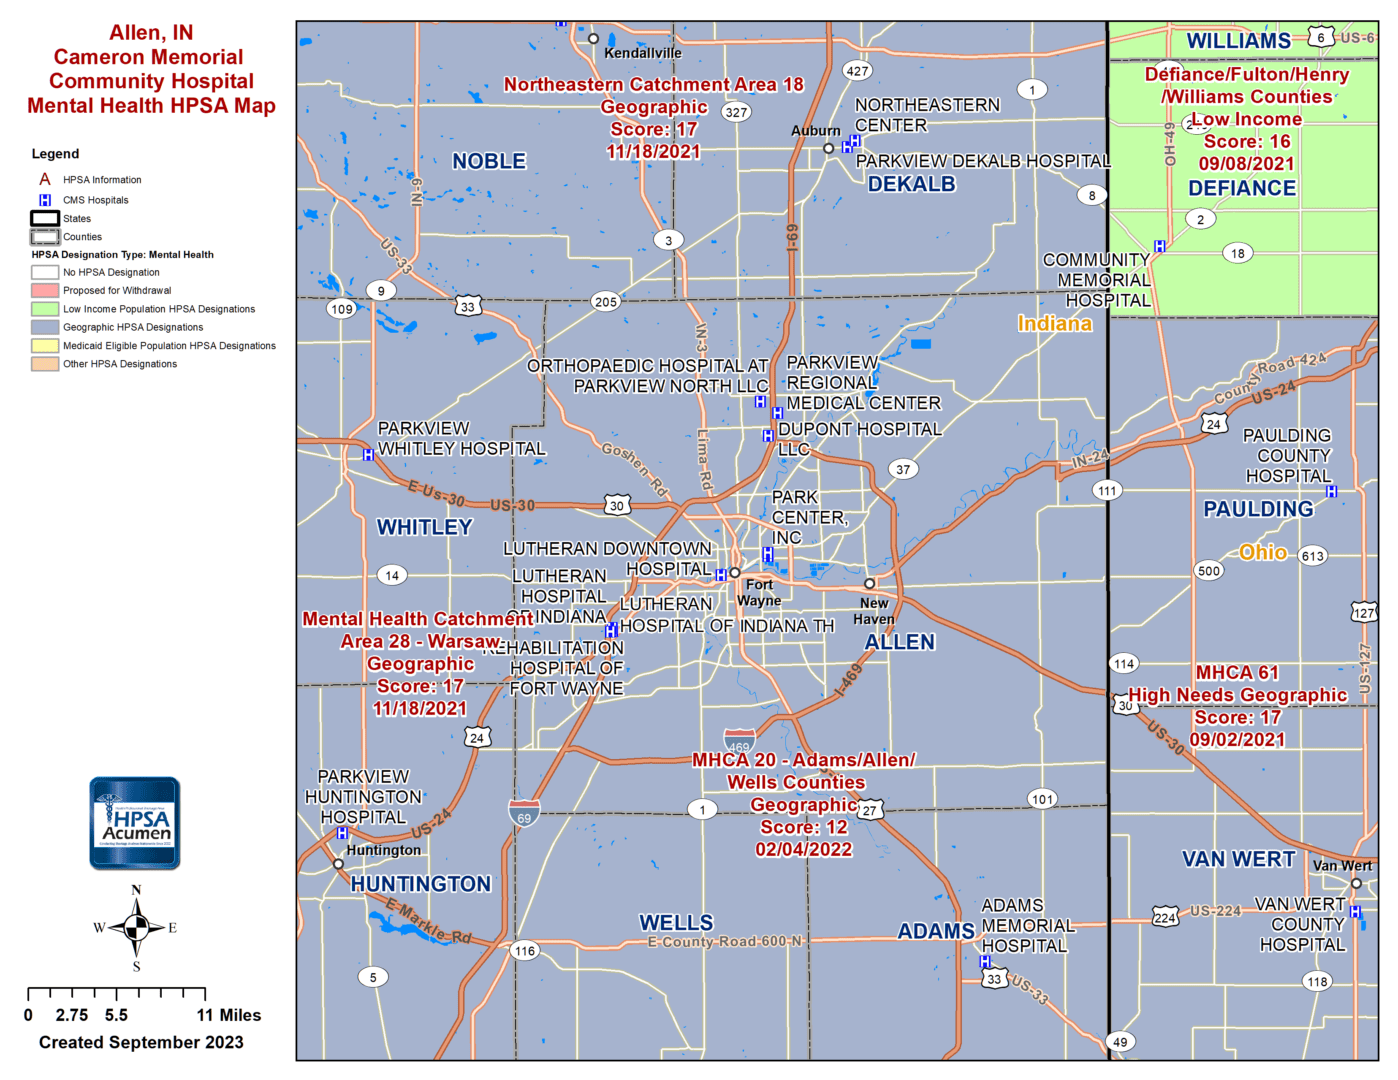 Allen, IN MH HPSA Map